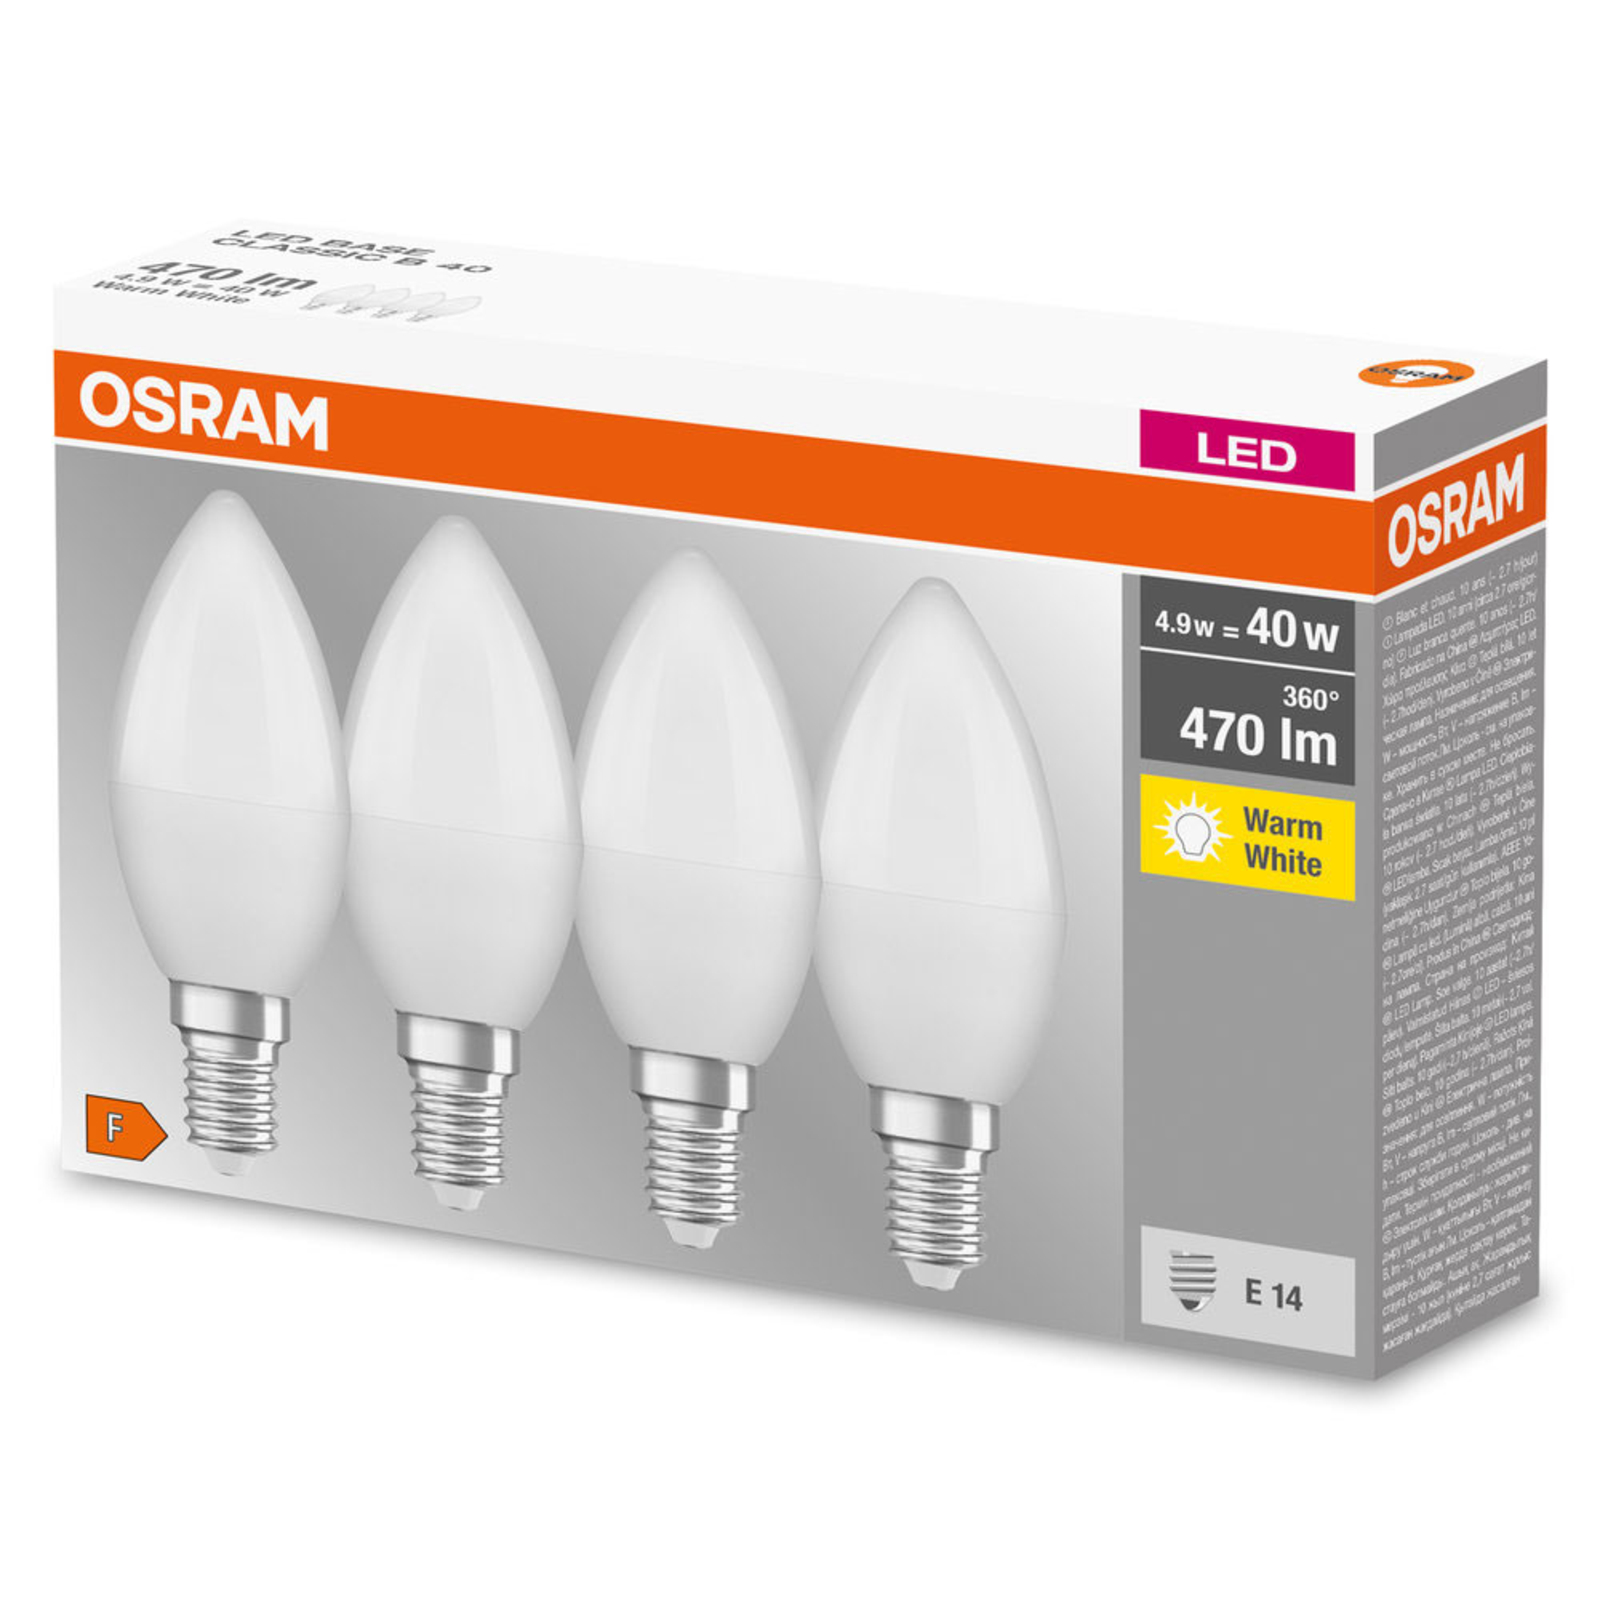 OSRAM bougie LED E14 Base Retro 4,9 W x4 2 700 K